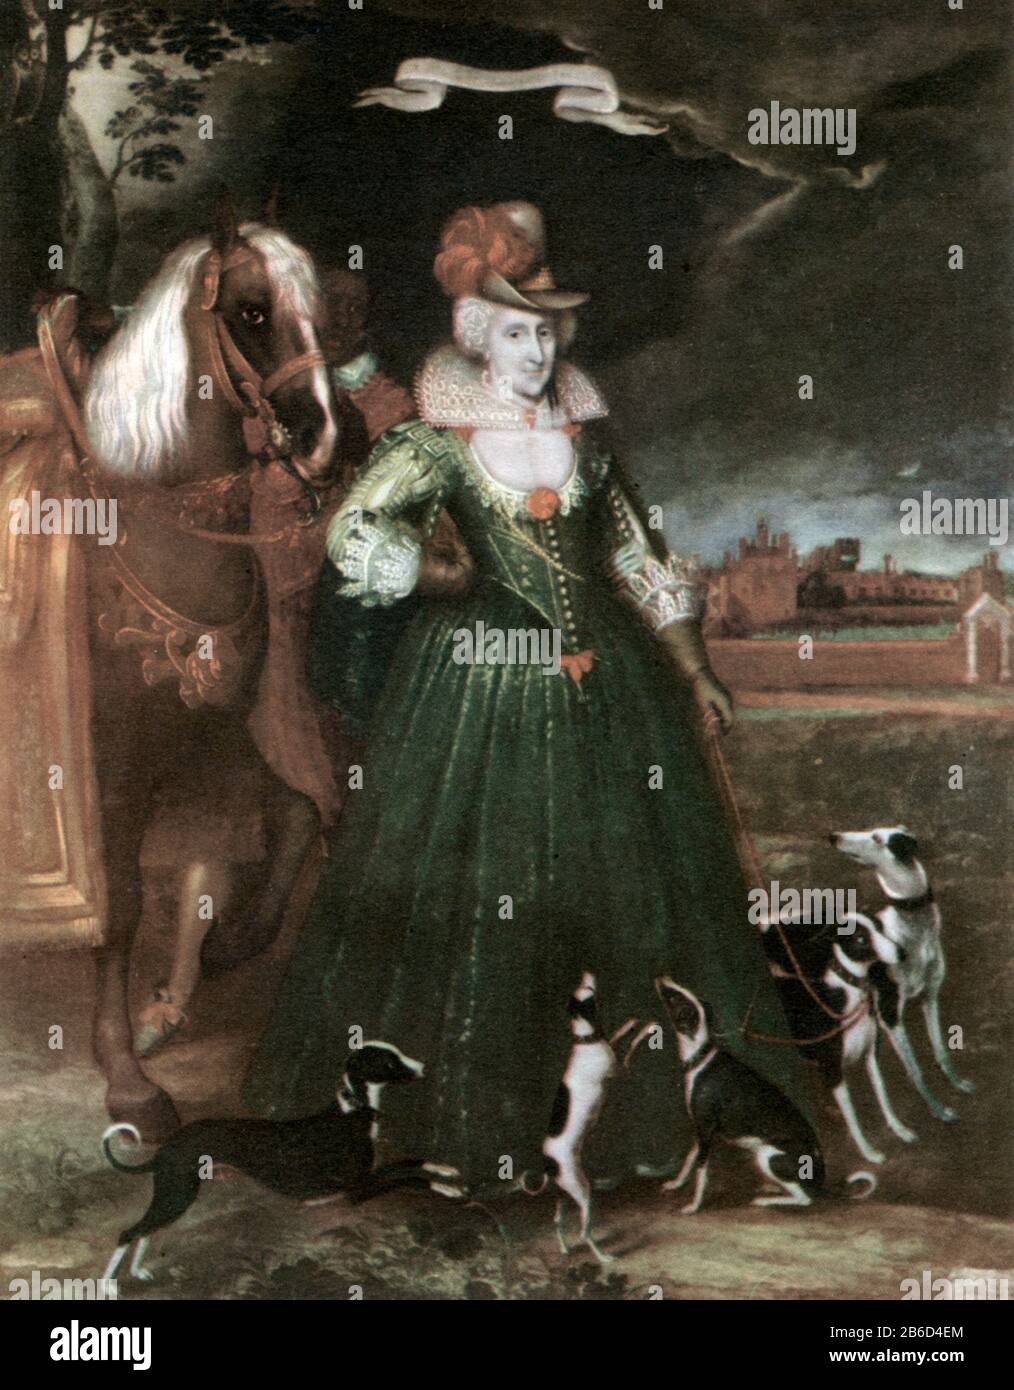 Anne von Dänemark (1574-1619), 1617. Von Paul van Somer I. (c1576-1621). Anne of Denmark (1574-1619), Queen Consort of Scotland, England, and Ireland durch Heirat mit König James VI. Und I. Queen Anne wird im Gelände von Oatlands House (sichtbar in der Ferne), Weybridge, Surrey, England dargestellt. Stockfoto